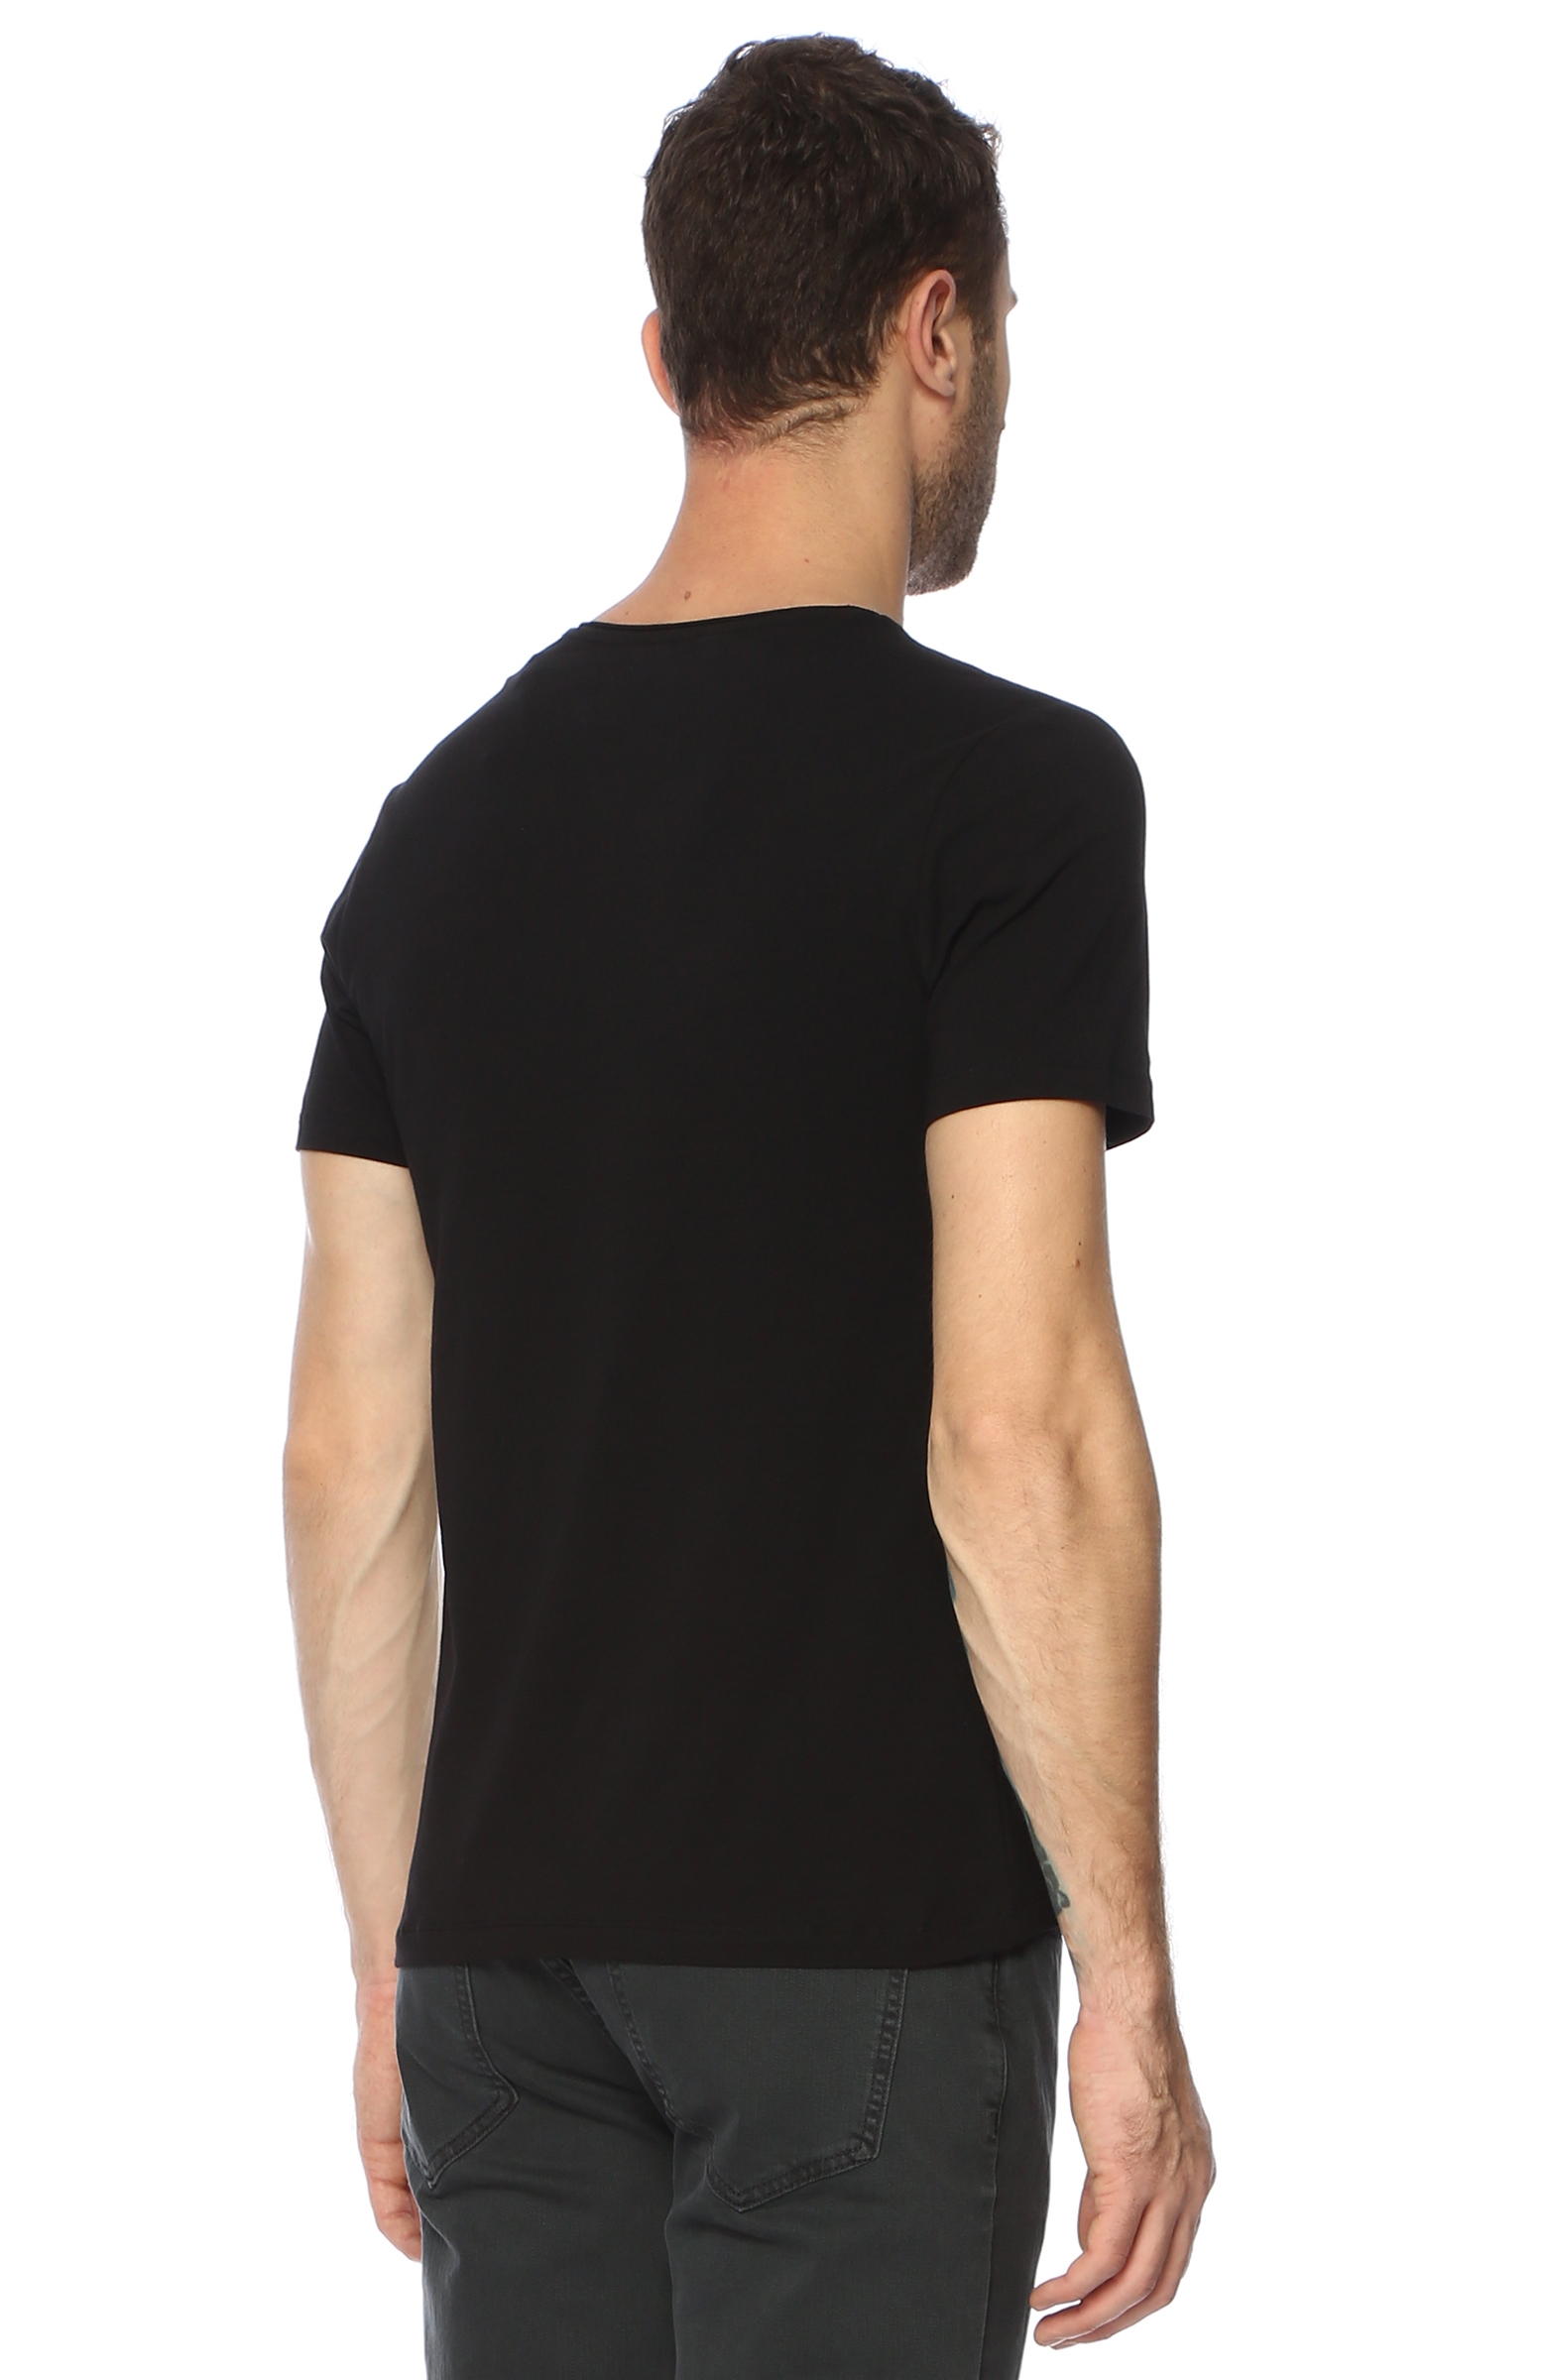 Siyah V Yaka T-Shirt